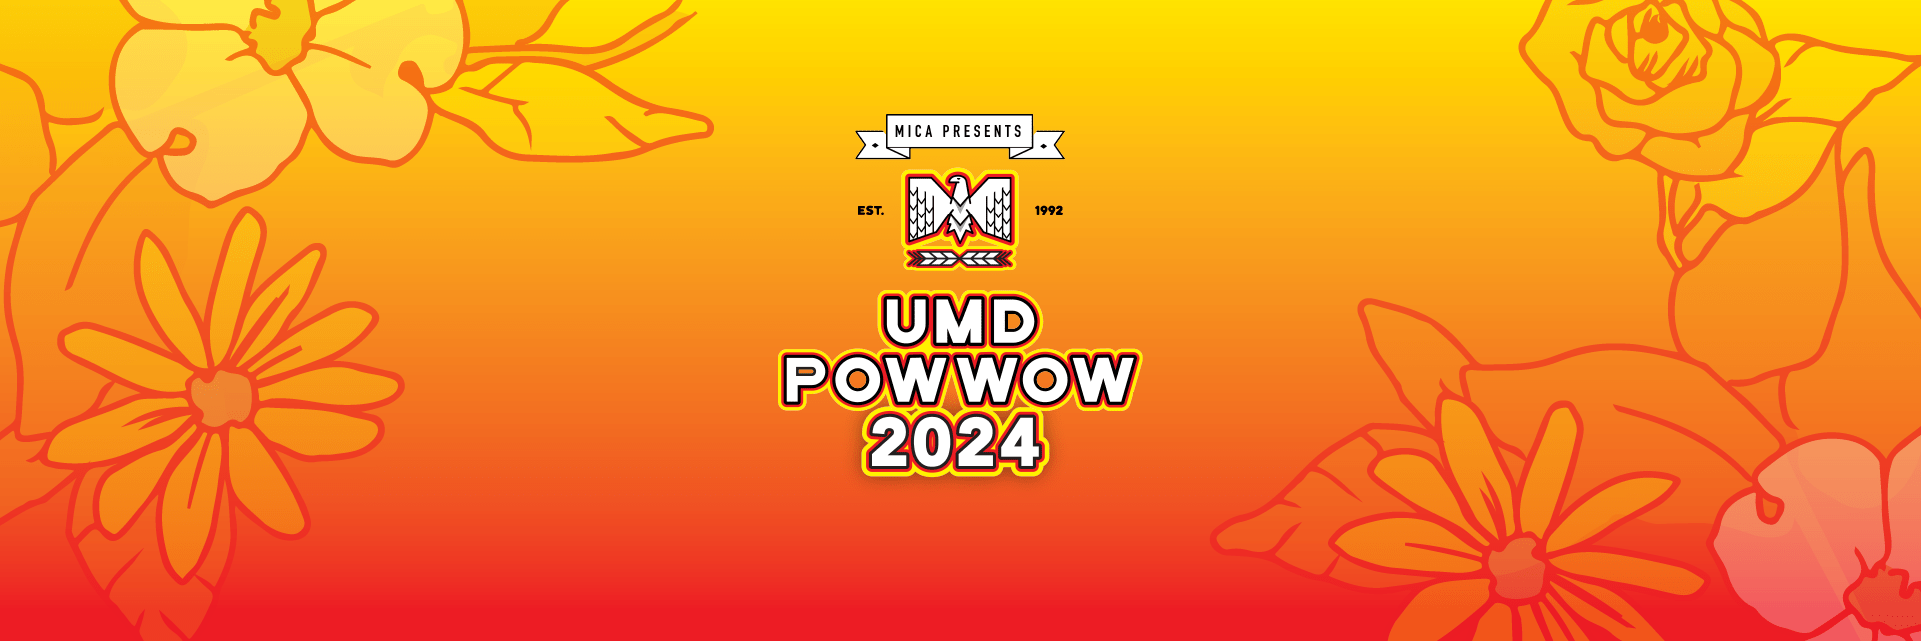 UMD Powwow 2024